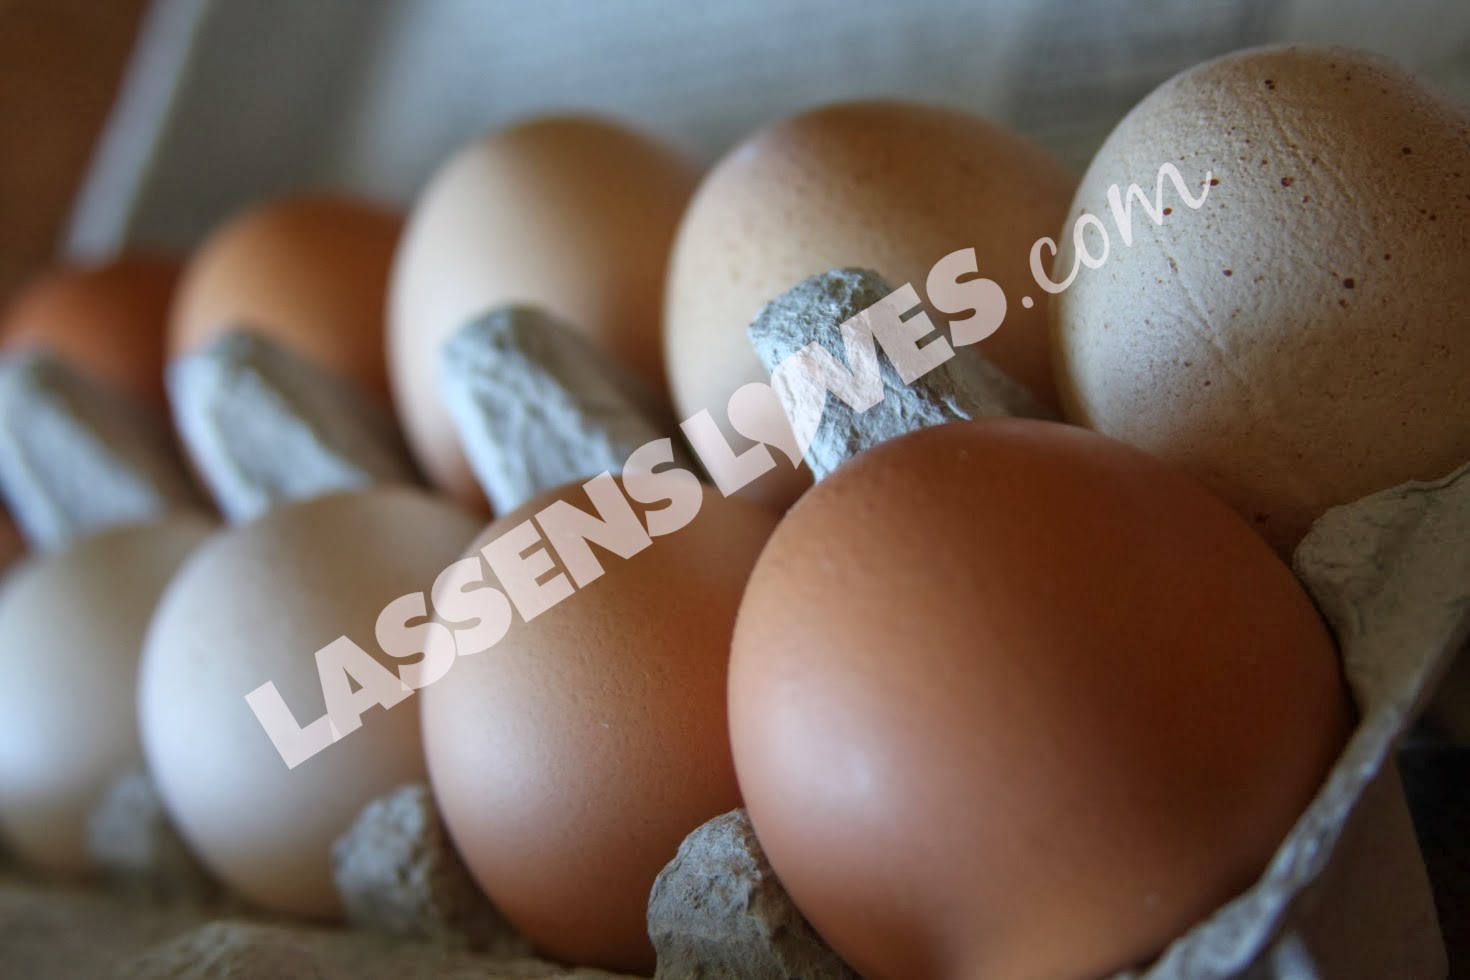 lassensloves.com, Lassen's, Lassens, Burroughs+Family+Farm+Eggs, Burroughs+Eggs